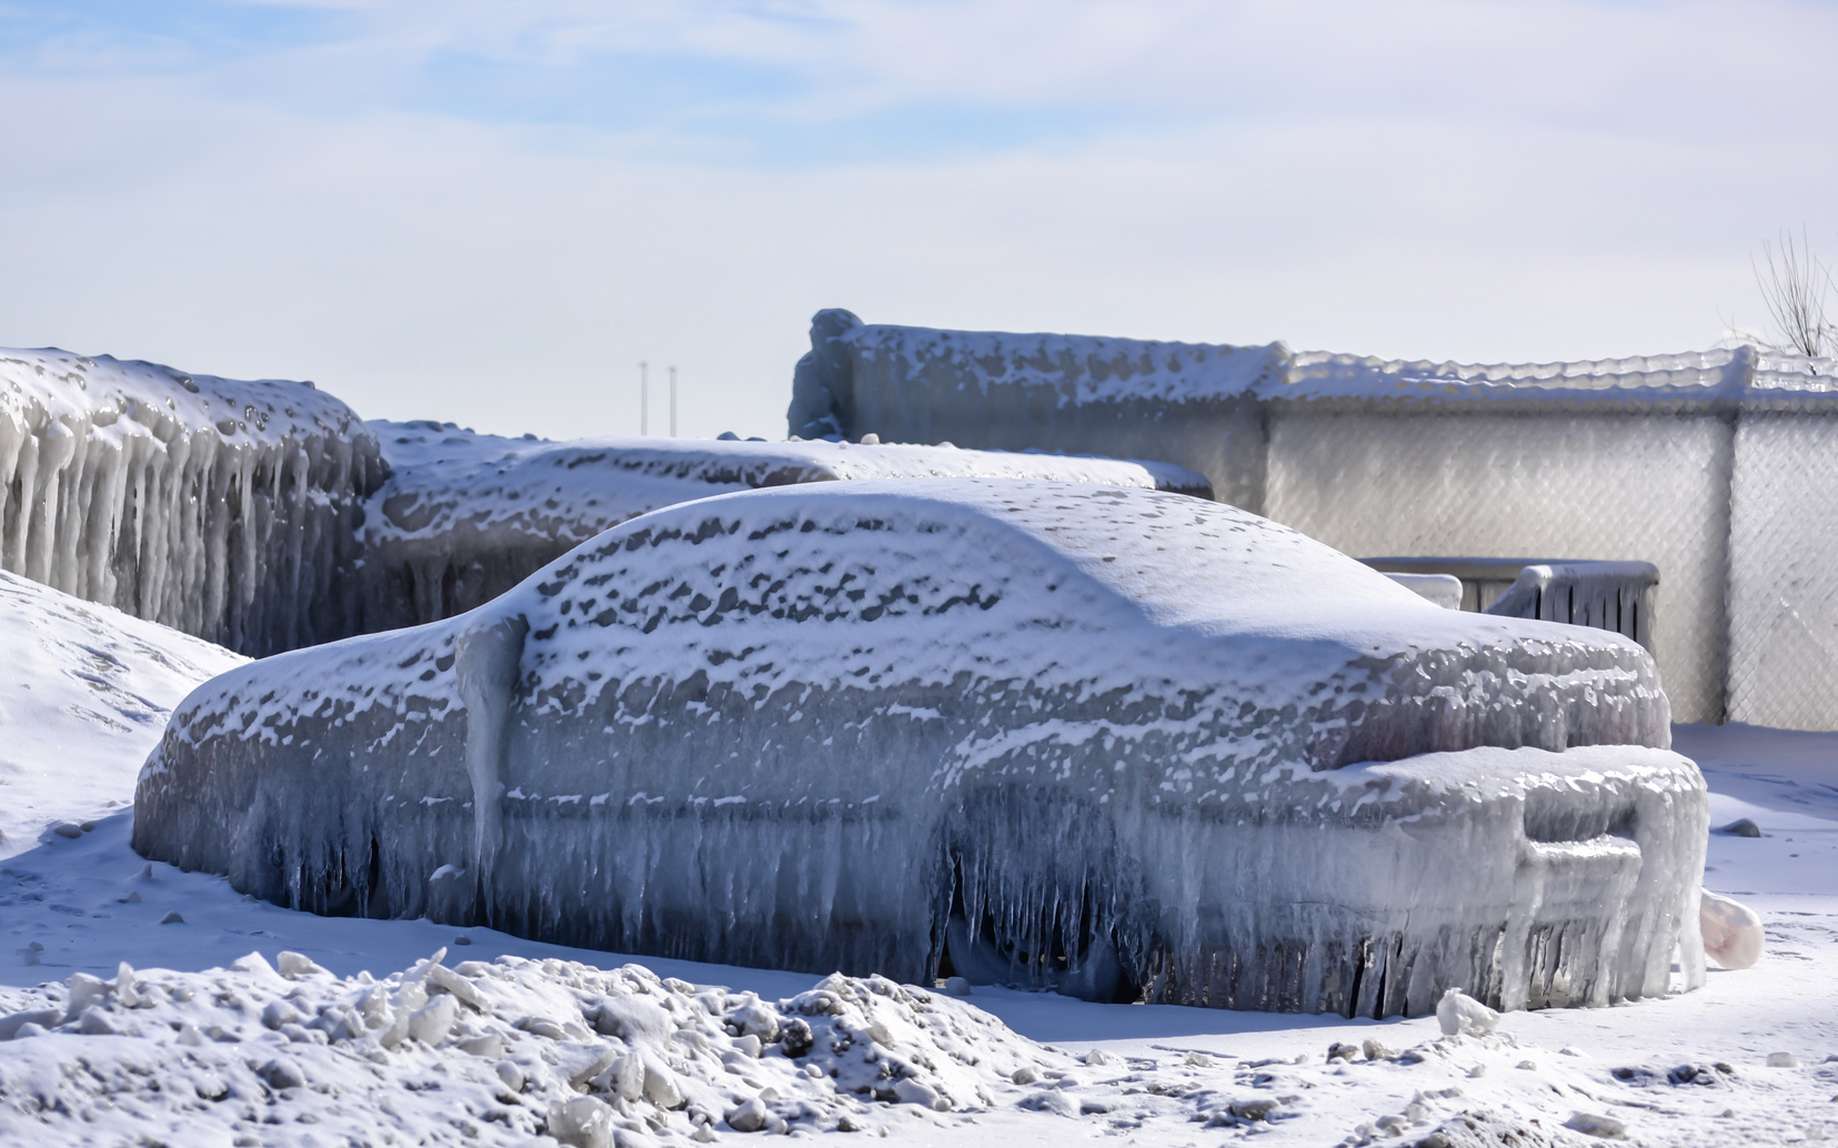 Le polar vortex venu d’Arctique a entraîné une vague de froid sur le Midwest américain d’une ampleur inédite depuis plusieurs décennies. © BradleyWarren, Fotolia